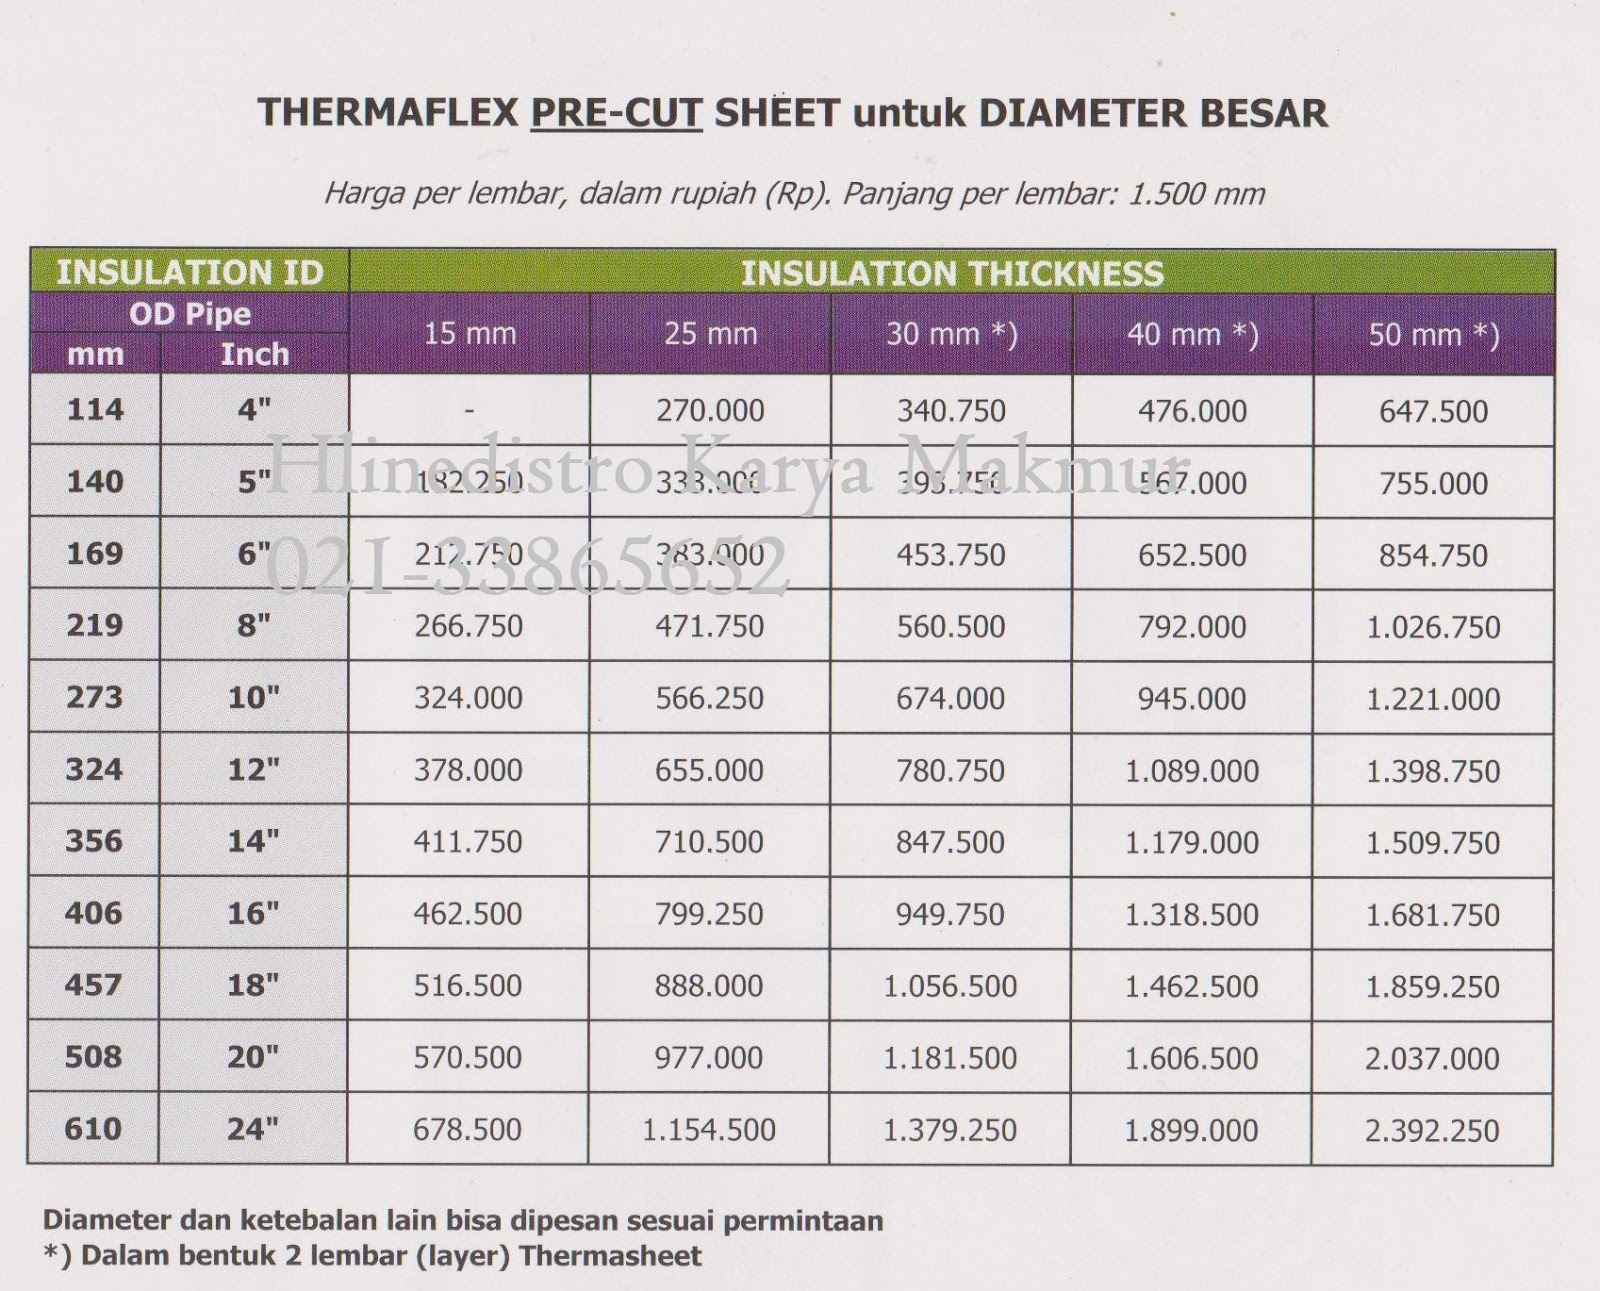 Price List Thermaflex  PRICE LIST THERMAFLEX  INSULATION